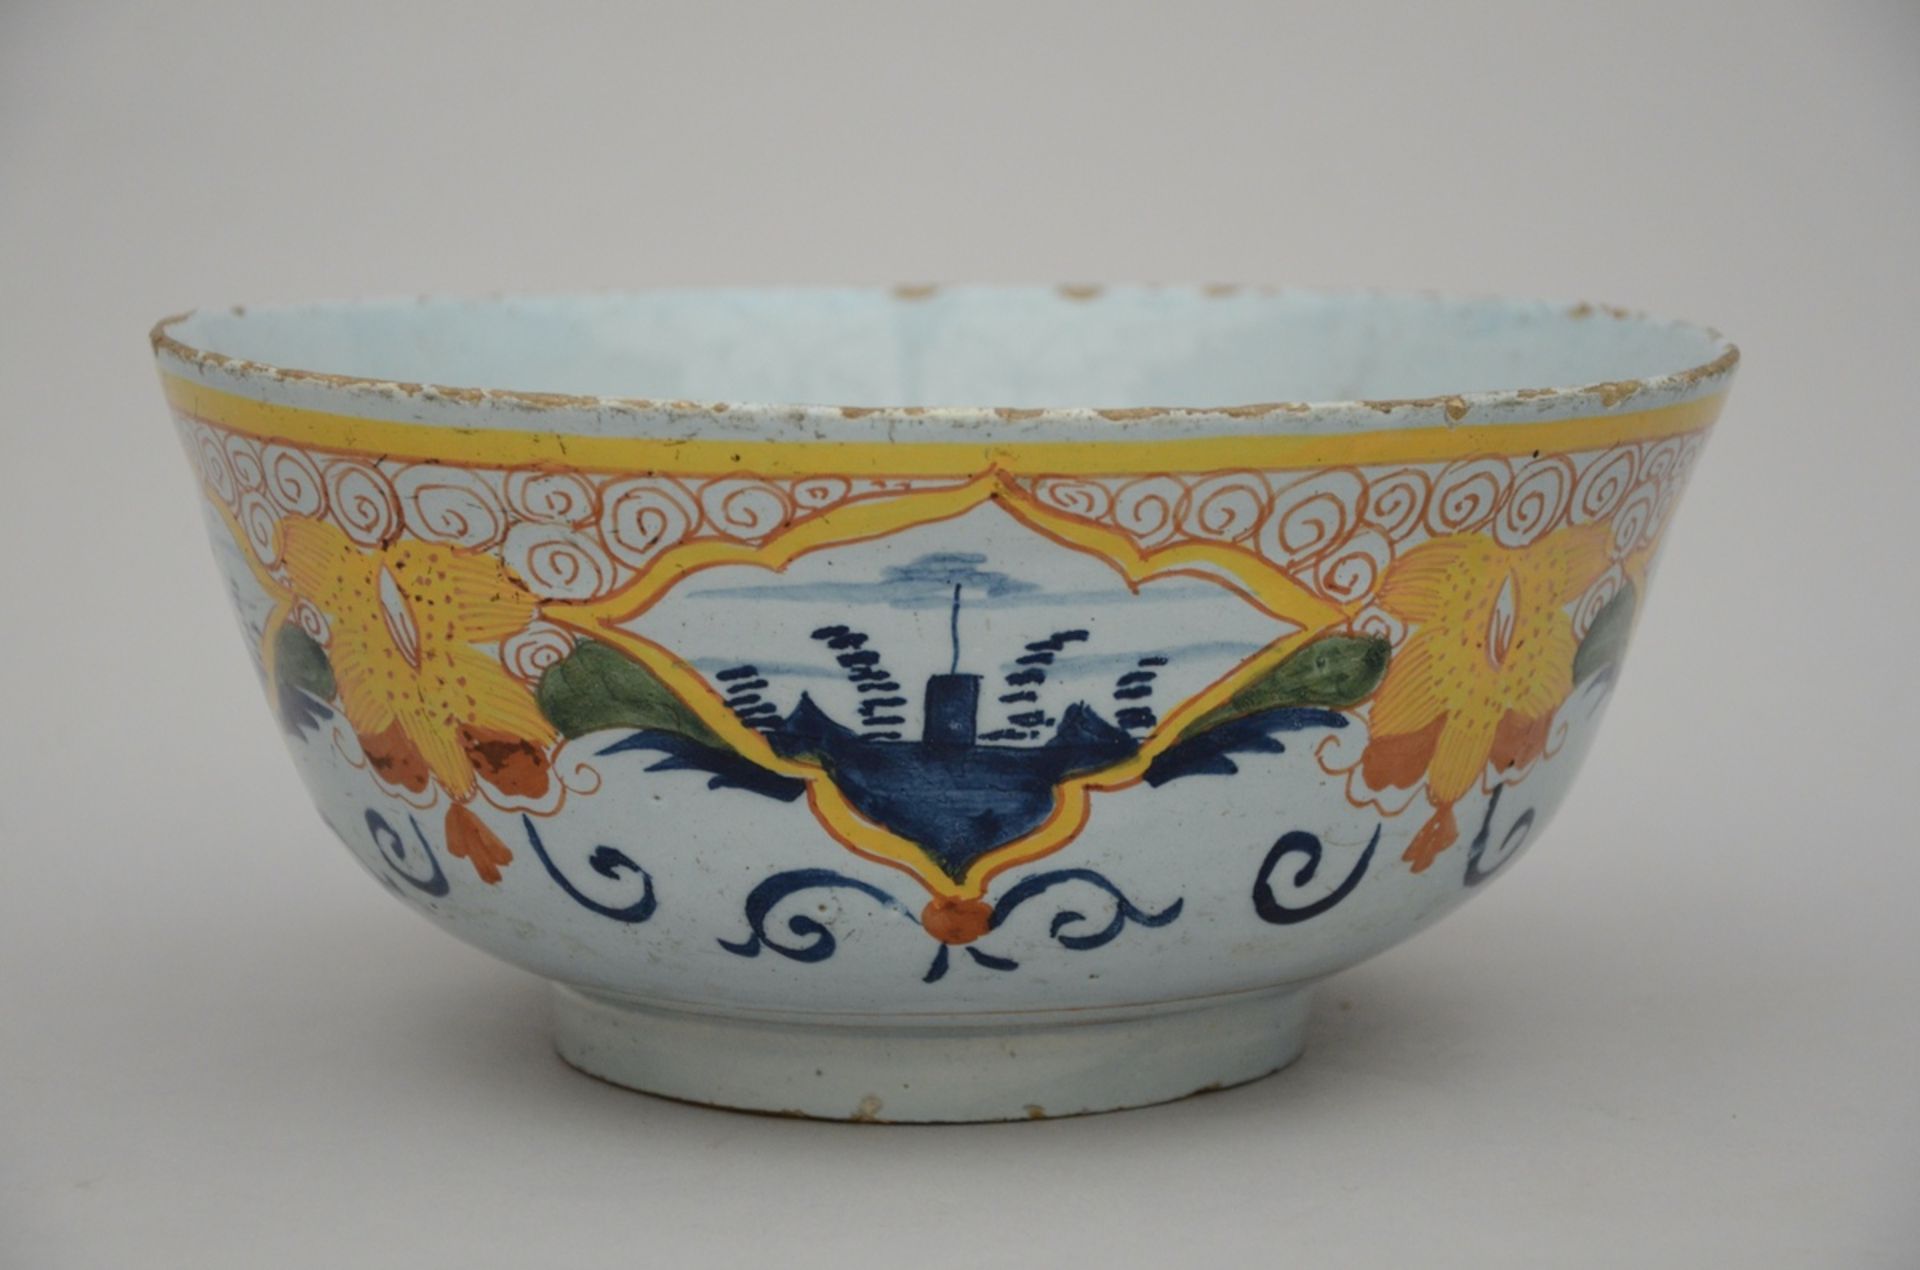 A Delft polychrome bowl 18th Century (h11.5 dia25.5cm)